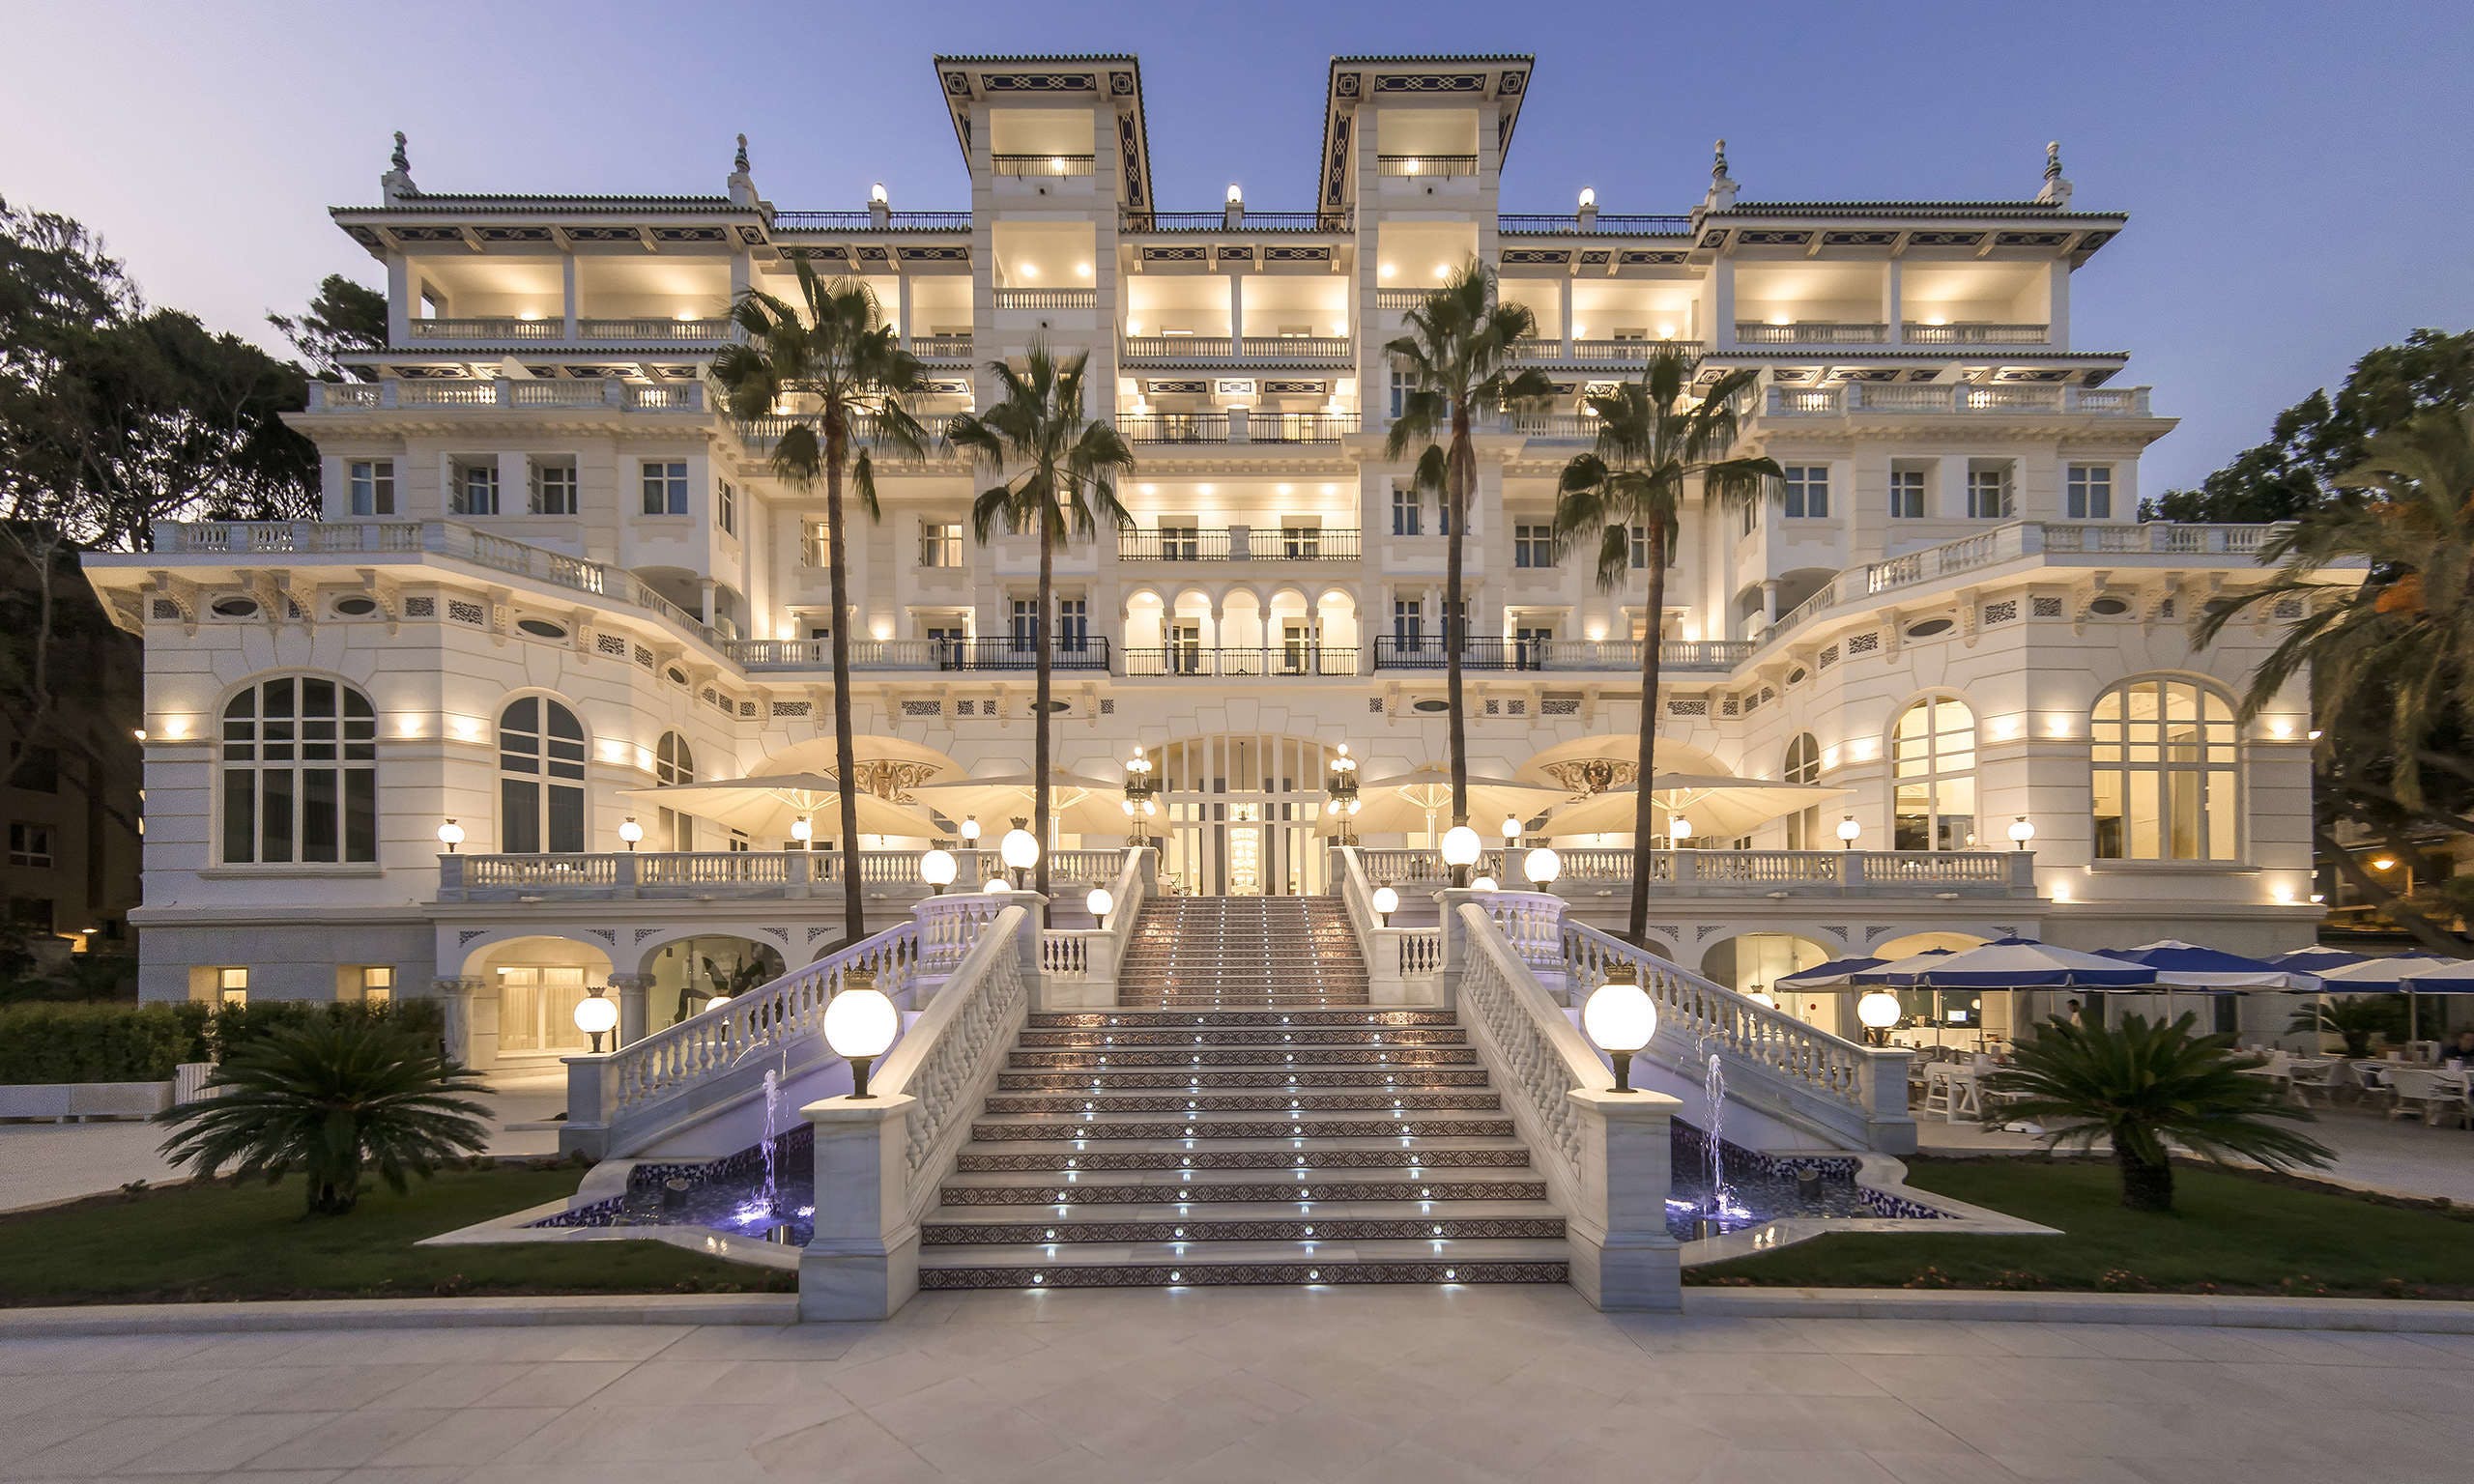 El Gran Hotel Miramar 5 esrellas GL tiene las mejores vistas de Málaga según Booking: “Excepcional”